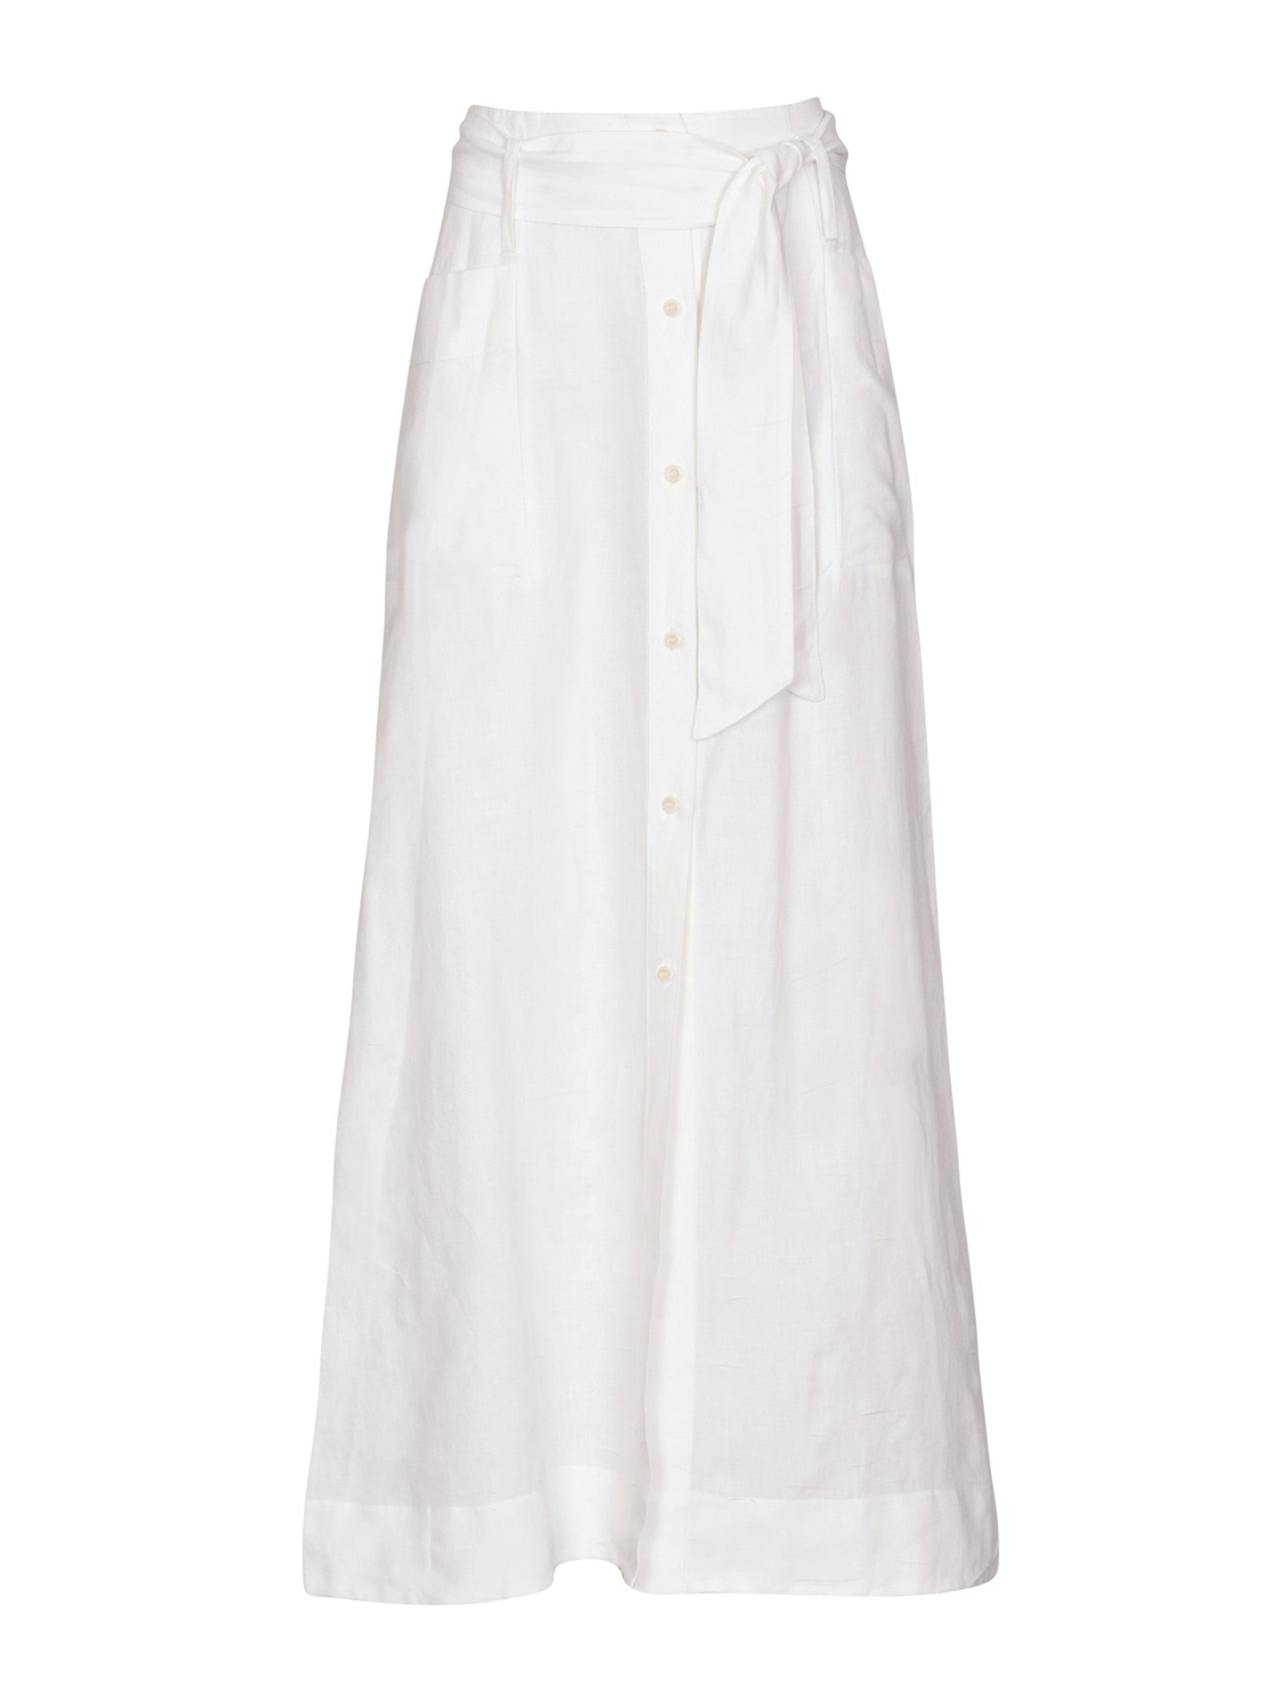 White Nomade skirt